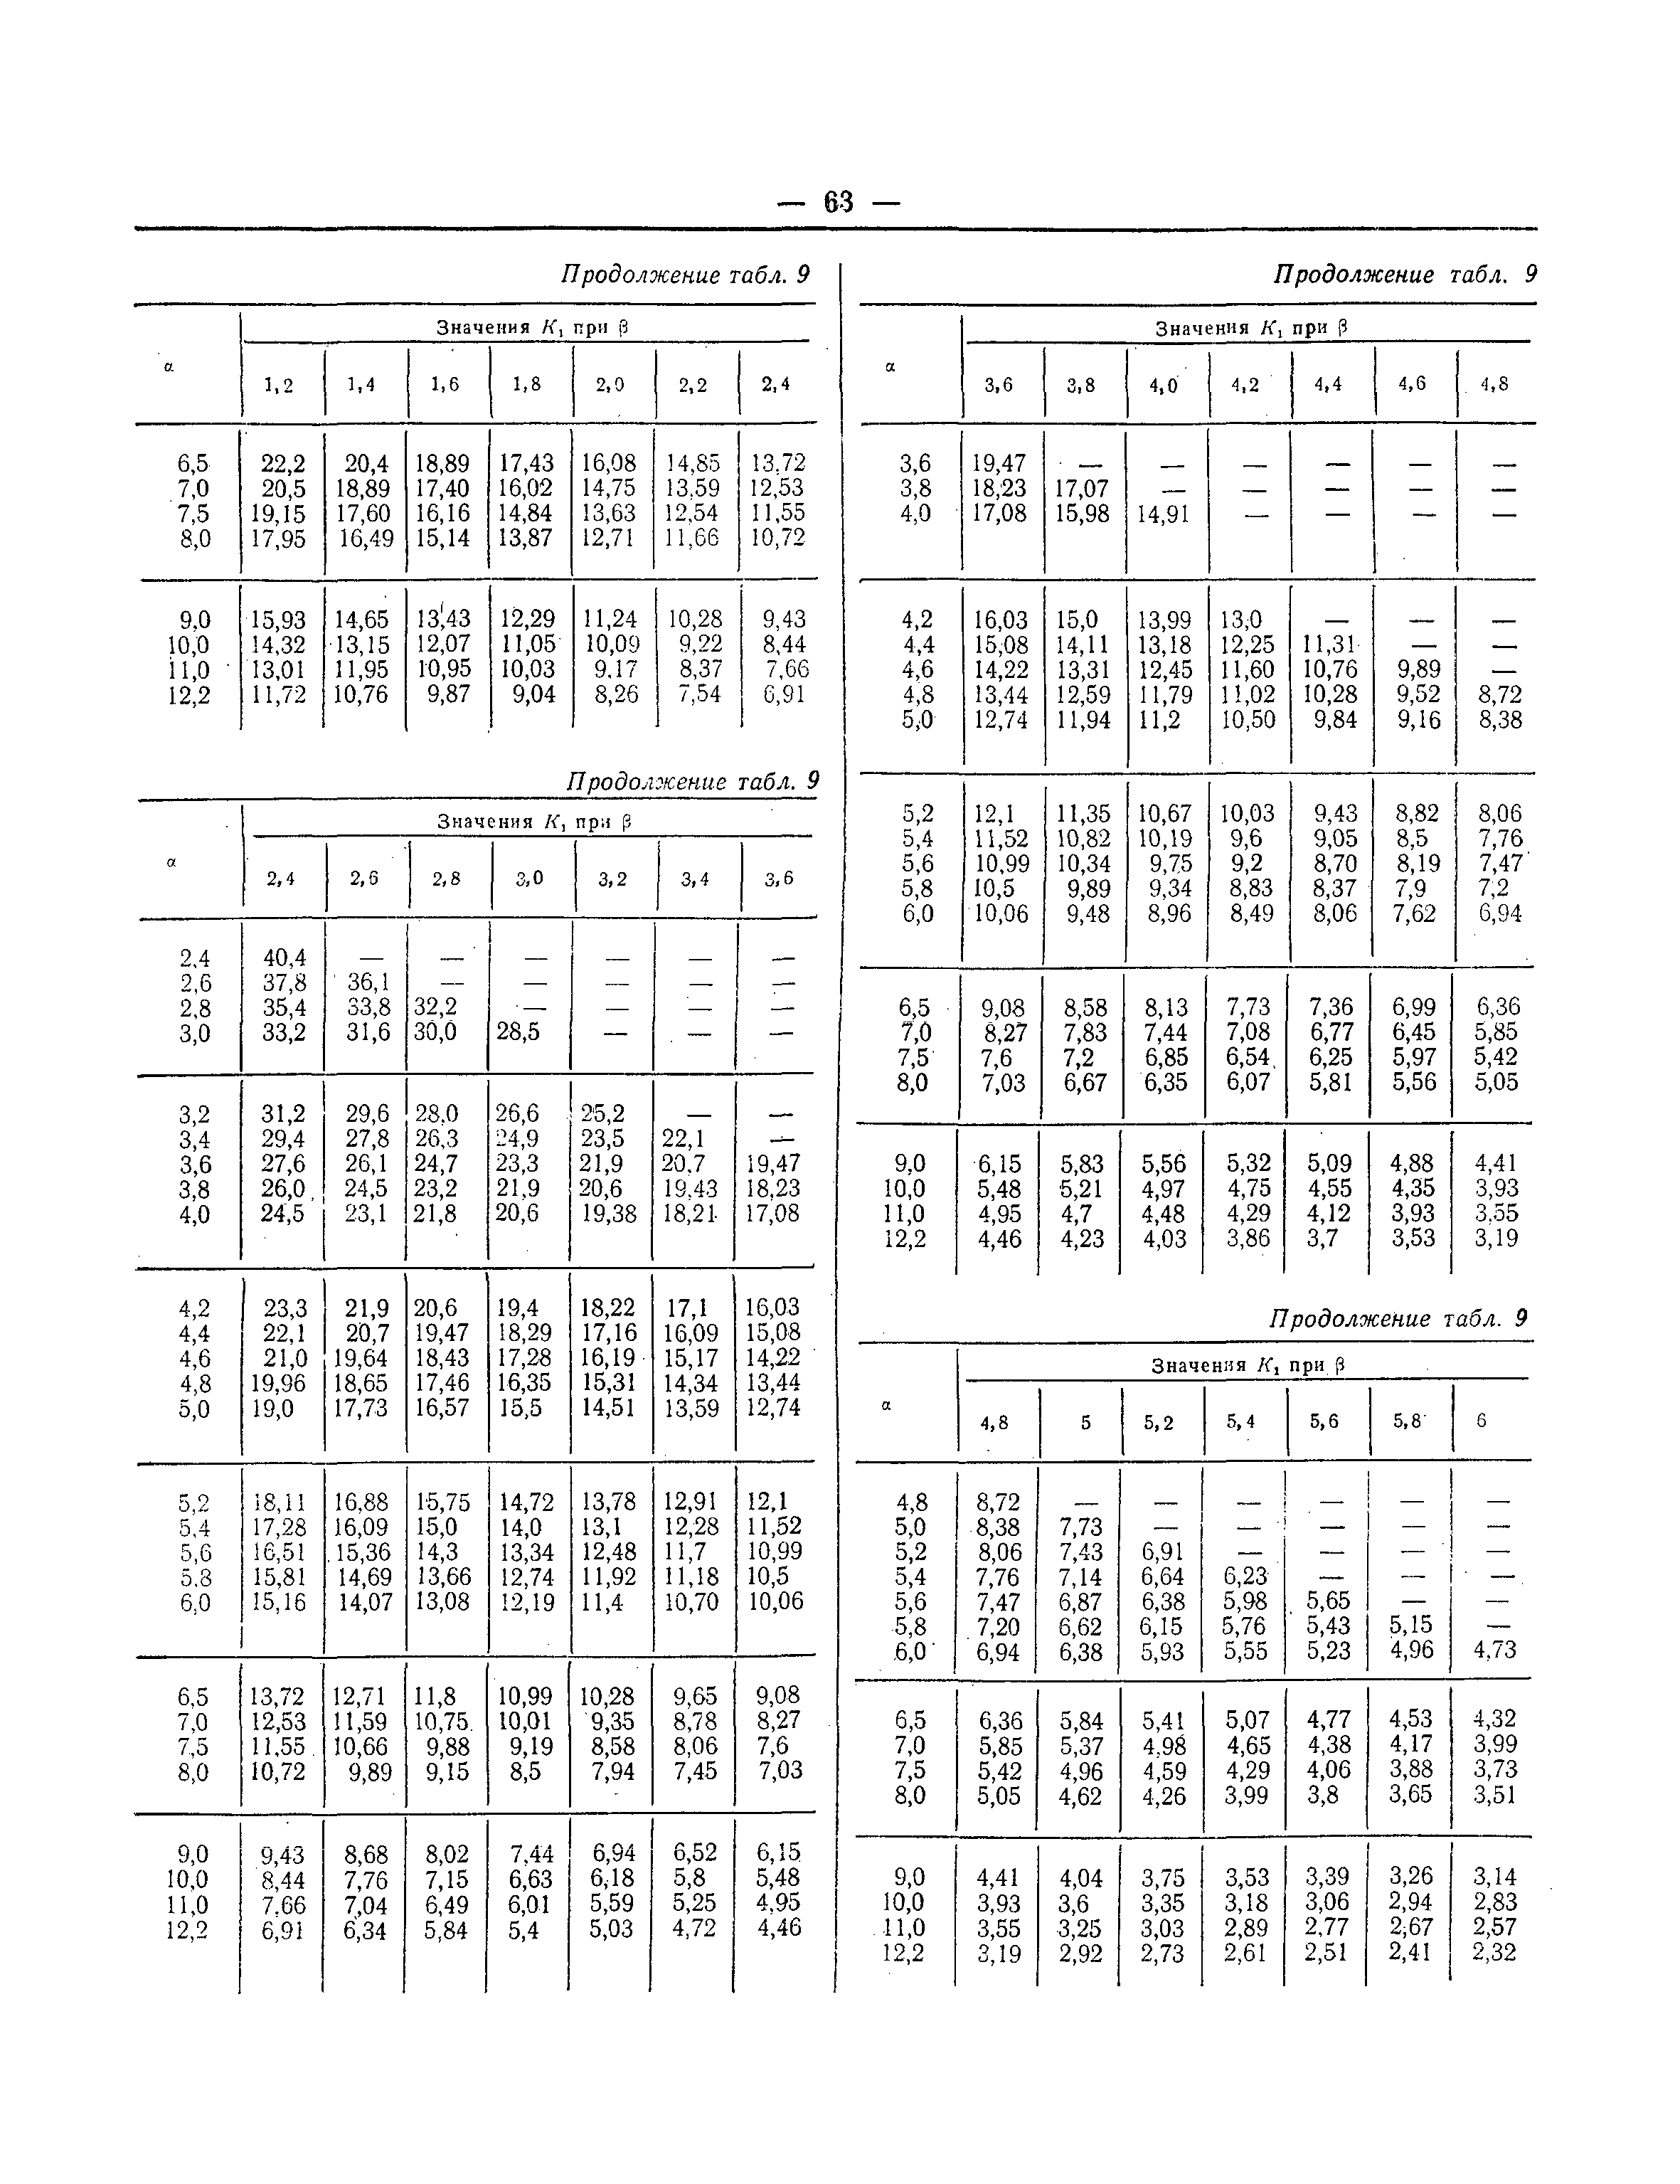 СНиП II-В.8-71